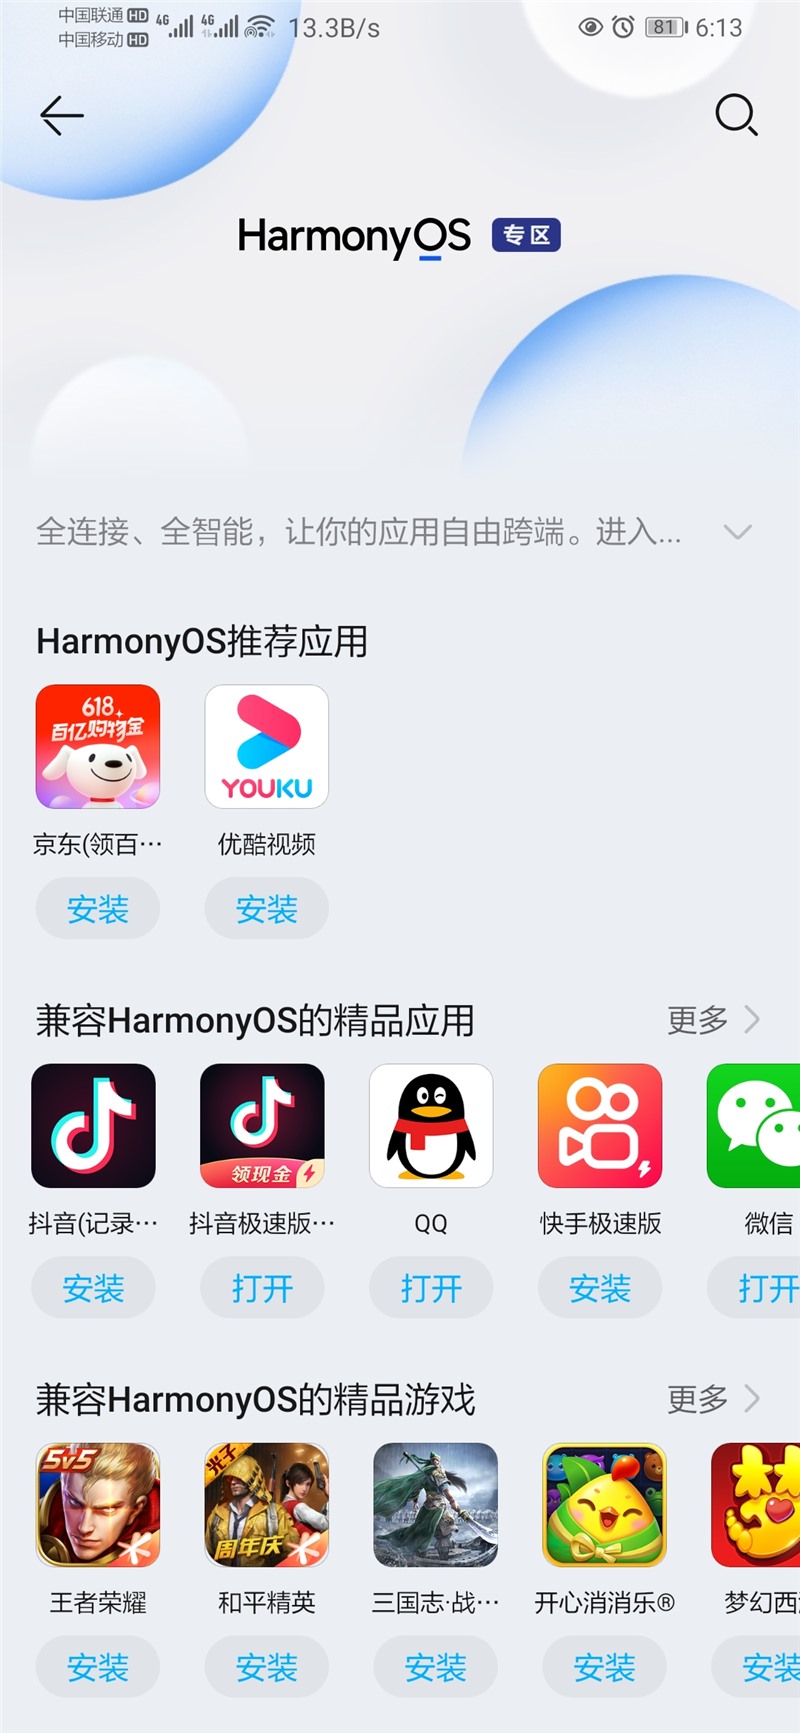 华为应用市场鸿蒙专区上线兼容 HarmonyOS 的应用 / 游戏专栏-开源基础软件社区